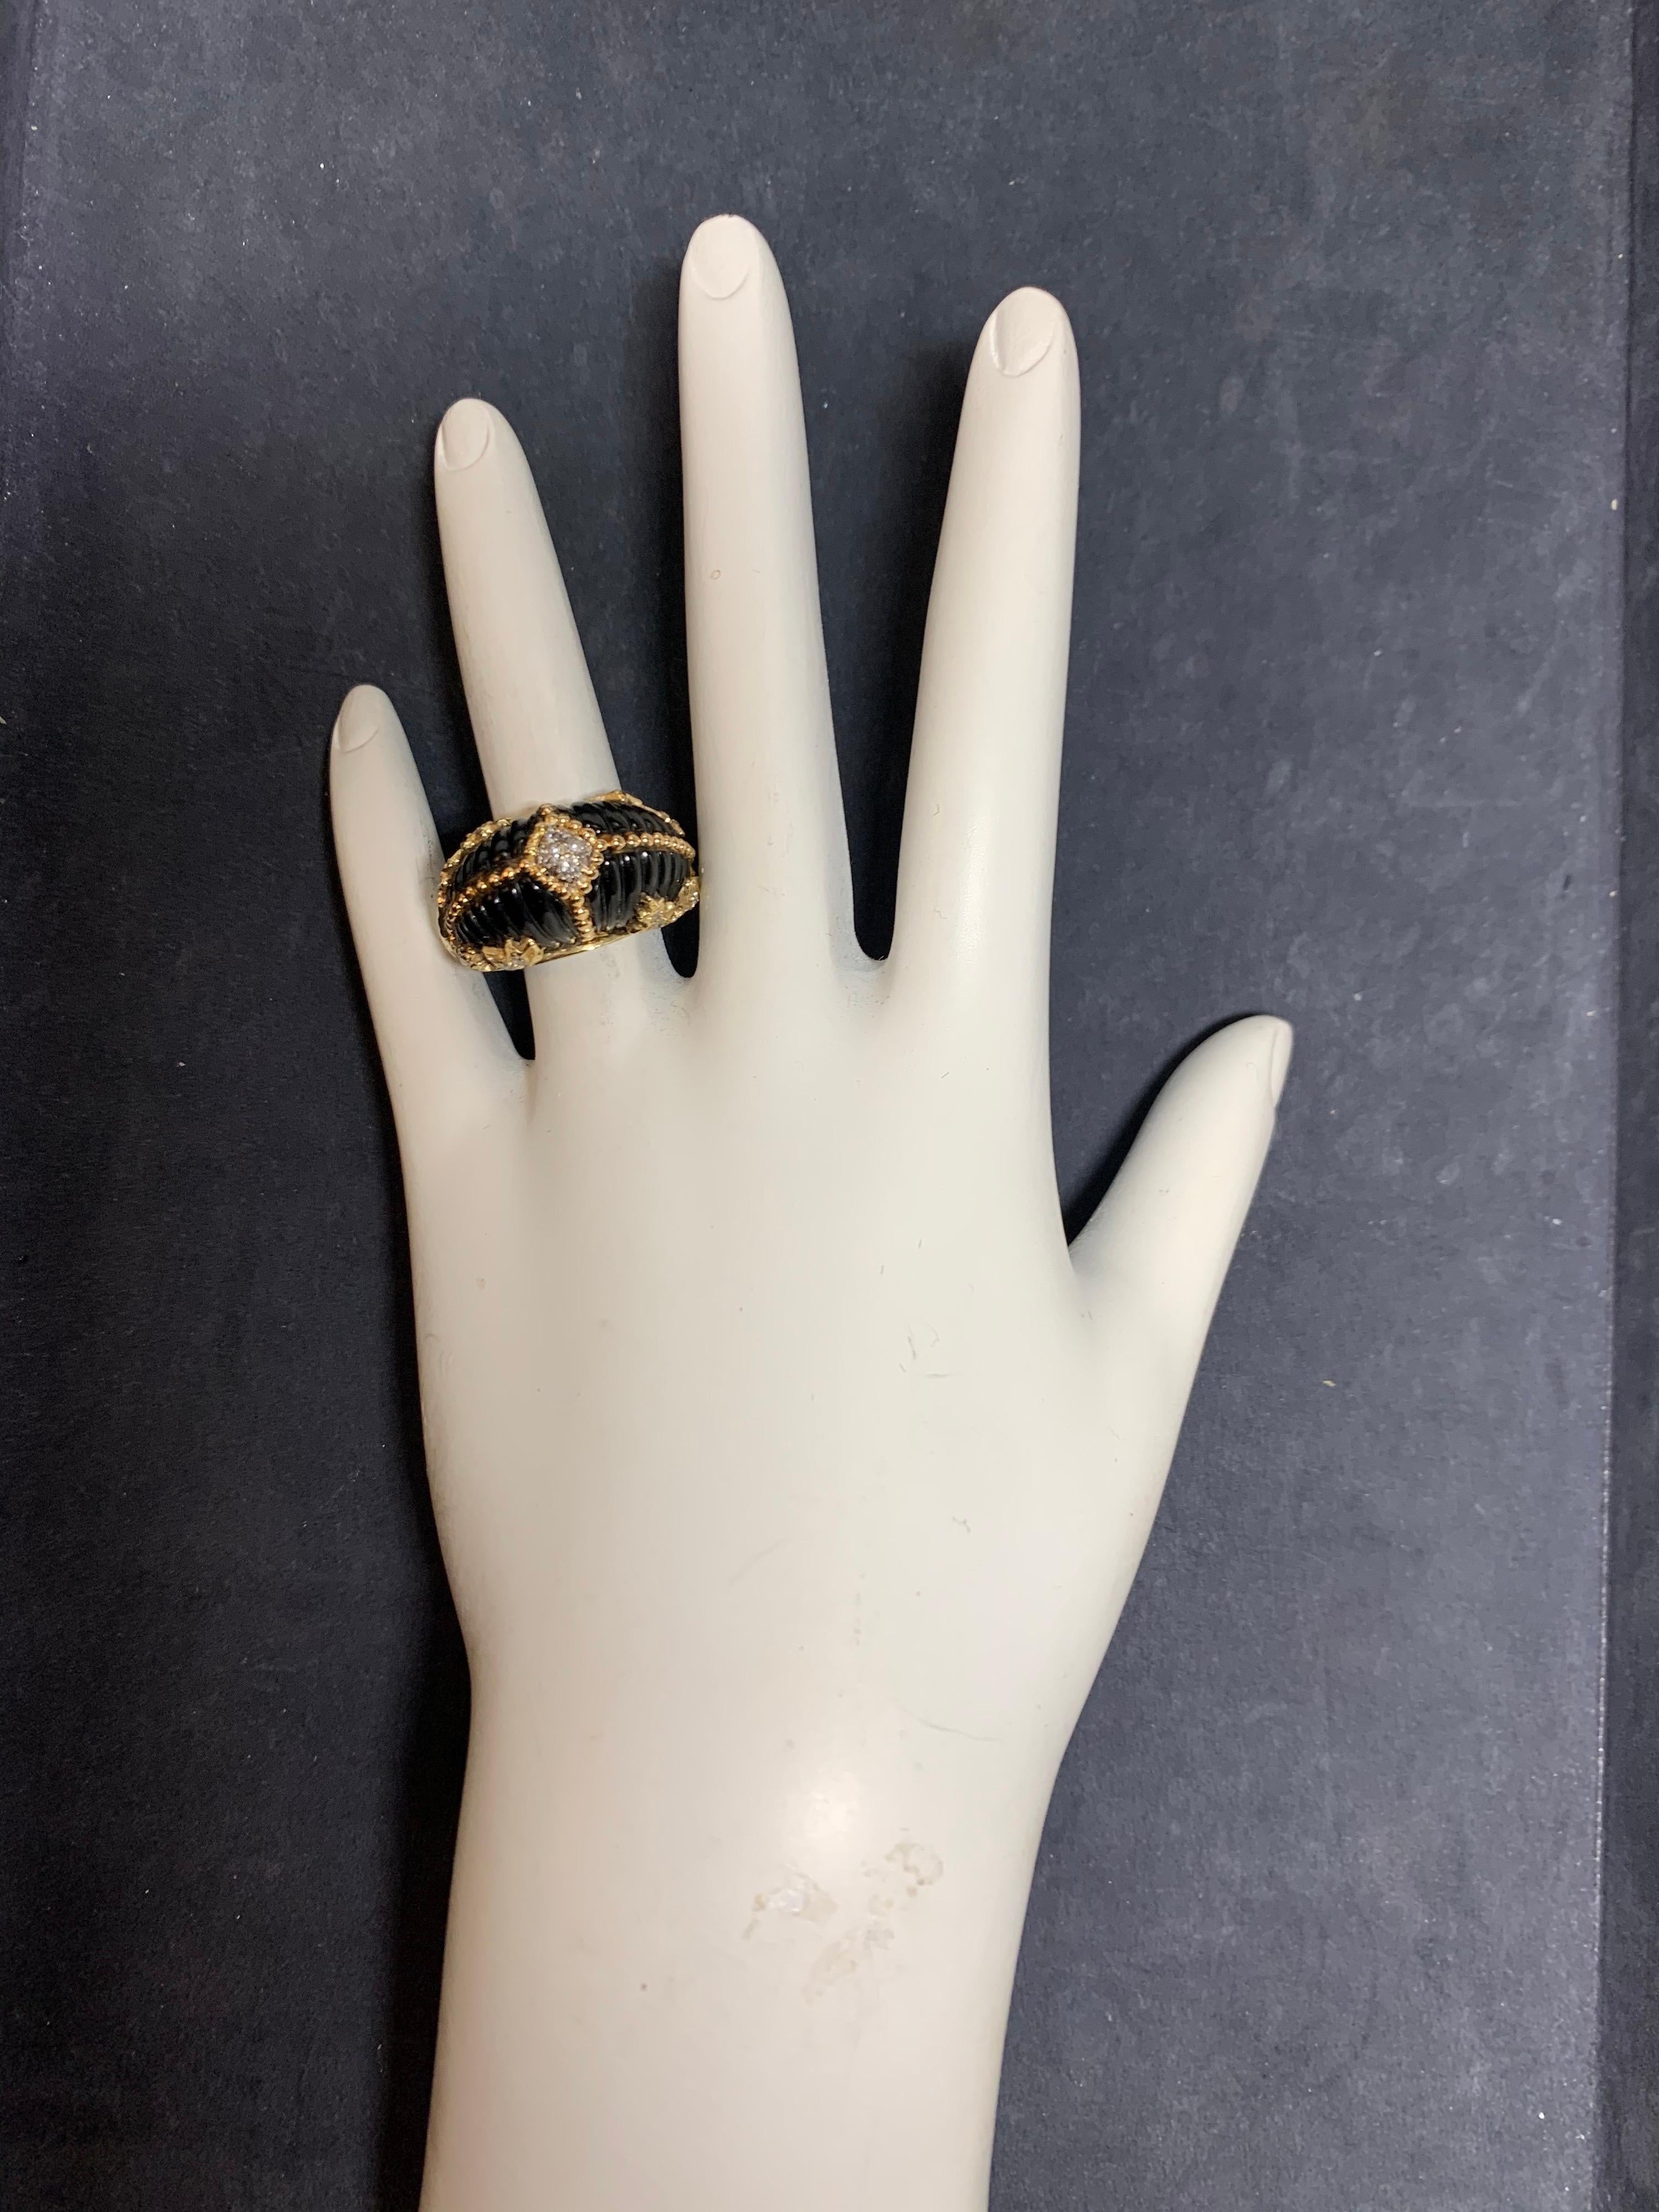 Retro 14k Gelbgold Cocktail Ring mit 20 natürlichen farblosen Diamanten von 0,35 Karat.

Der Onyx ist handgeschnitzt und der Ring wiegt 12,8 Gramm. Größe 7. 

(stock#1202)

Um 1950.